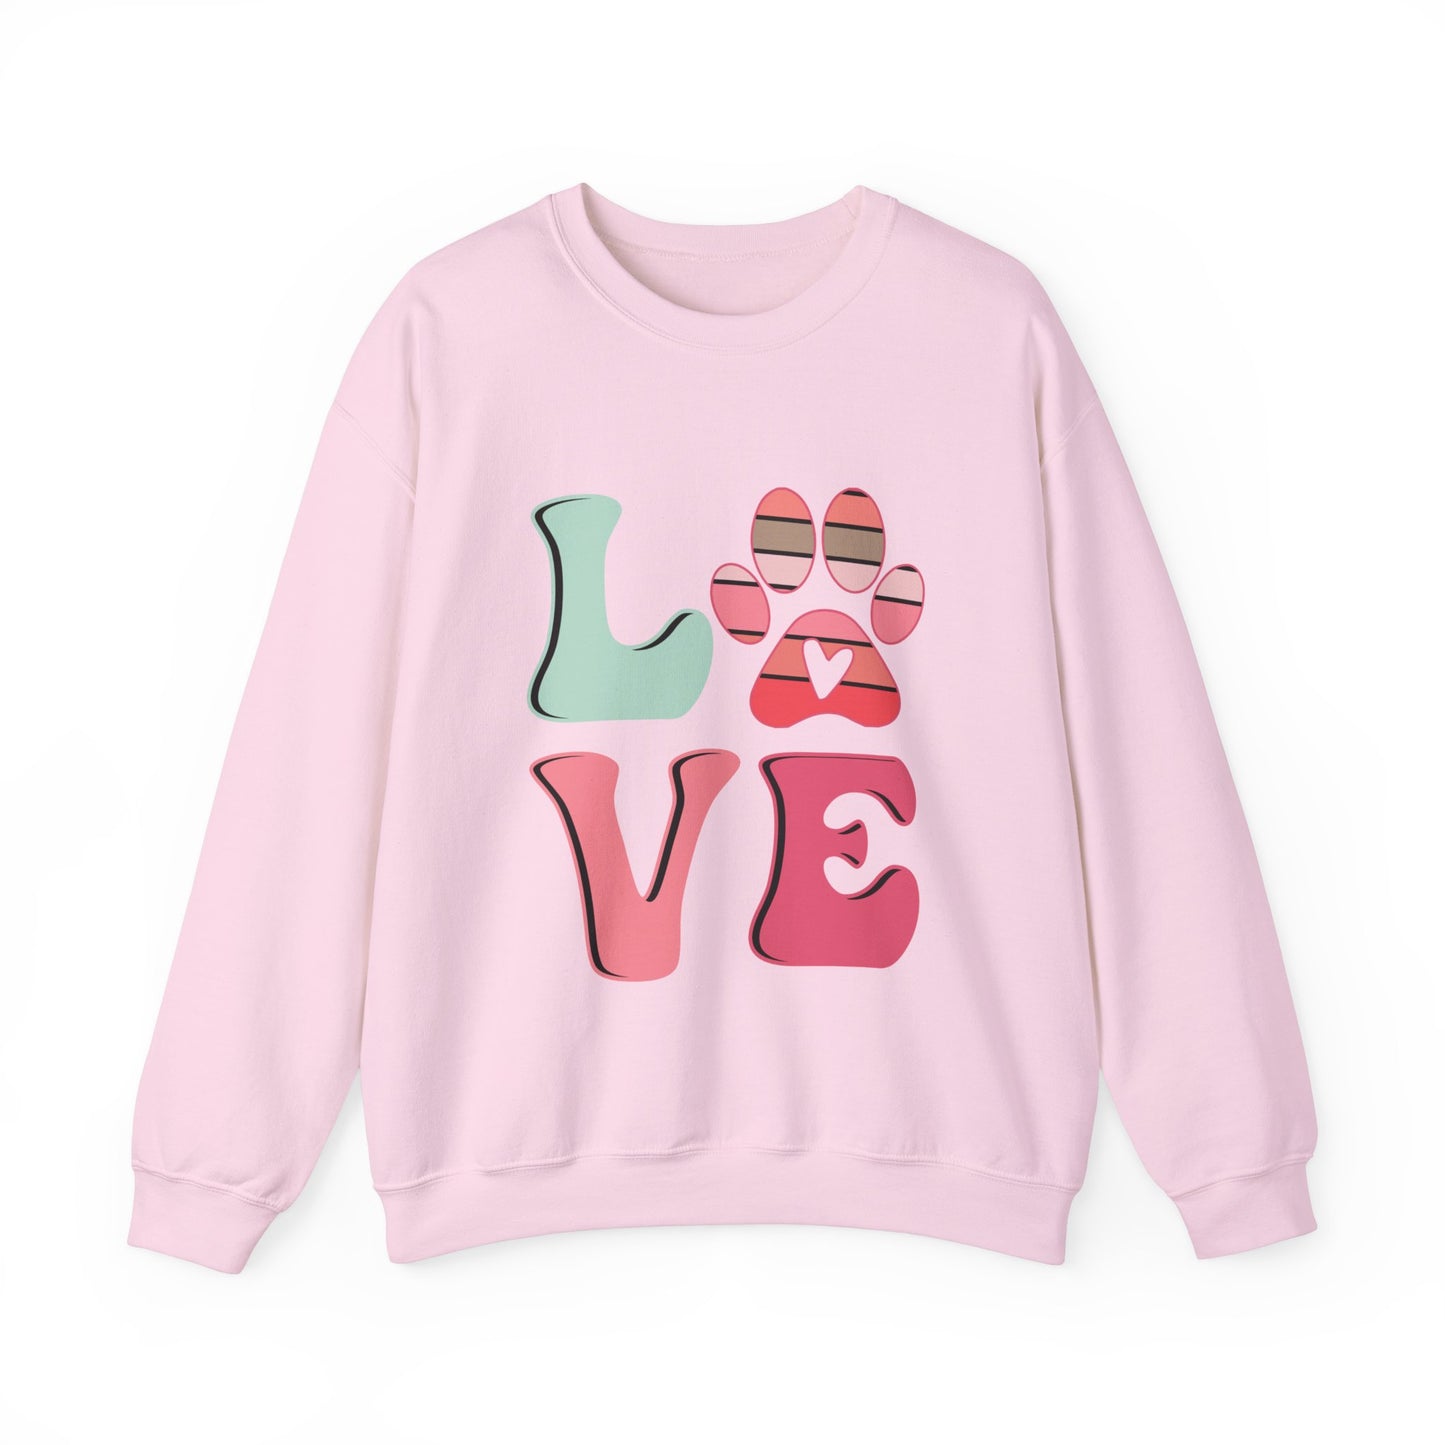 LOVE paws Valentine's Women's Sweatshirt